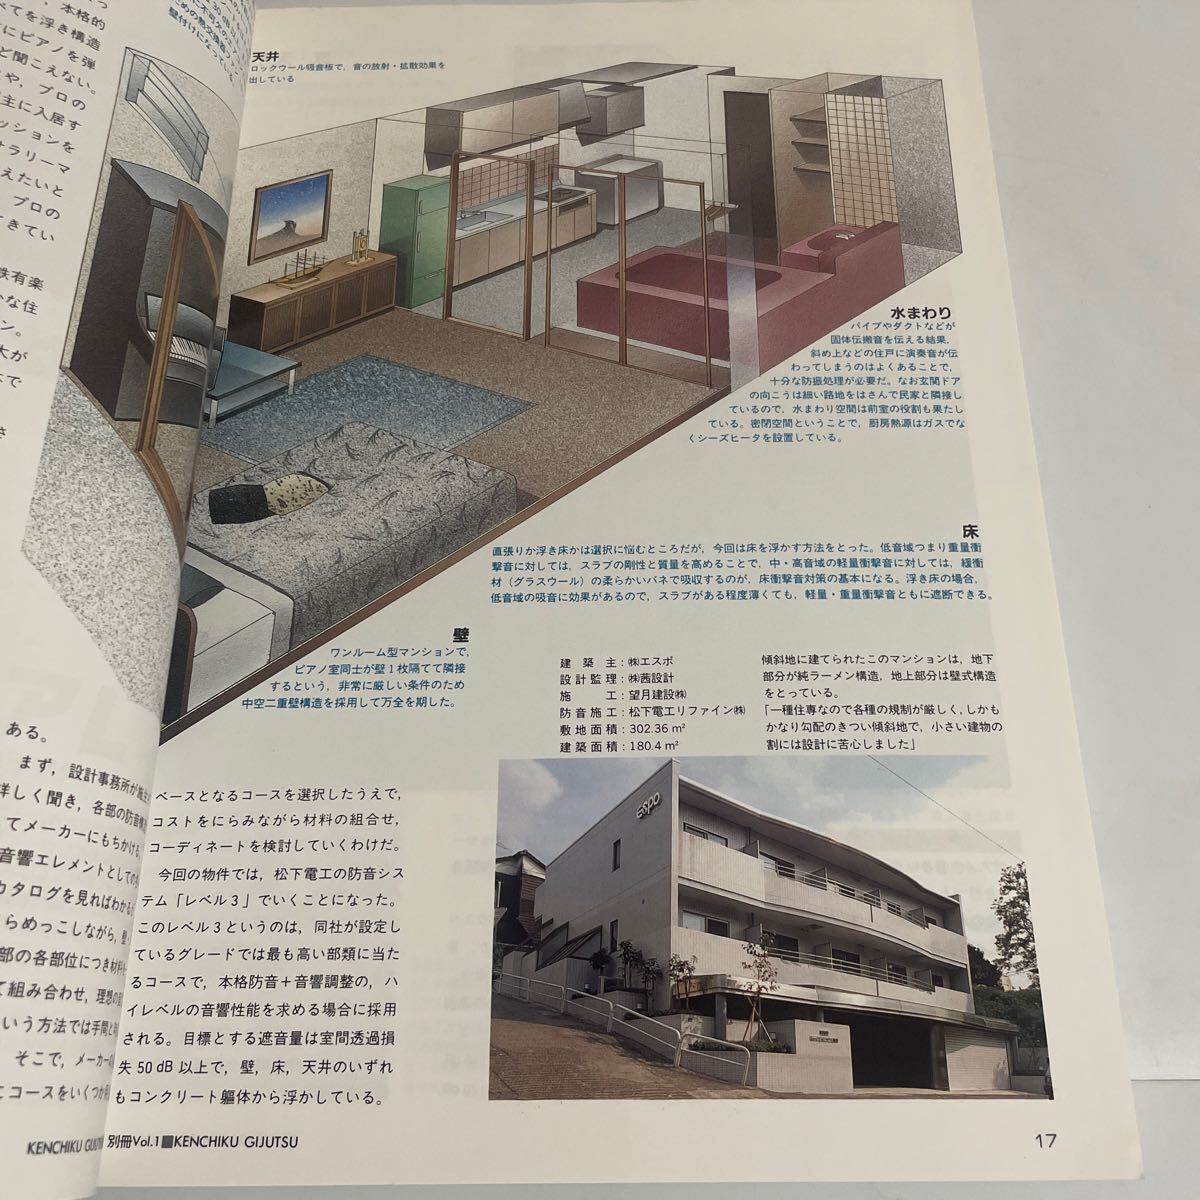 住宅の防音と調音のすべて 1988年12月号別冊（建築技術別冊 vol.1）実用保存版シリーズ サウンド・アメニティの設計技術AtoZの画像7